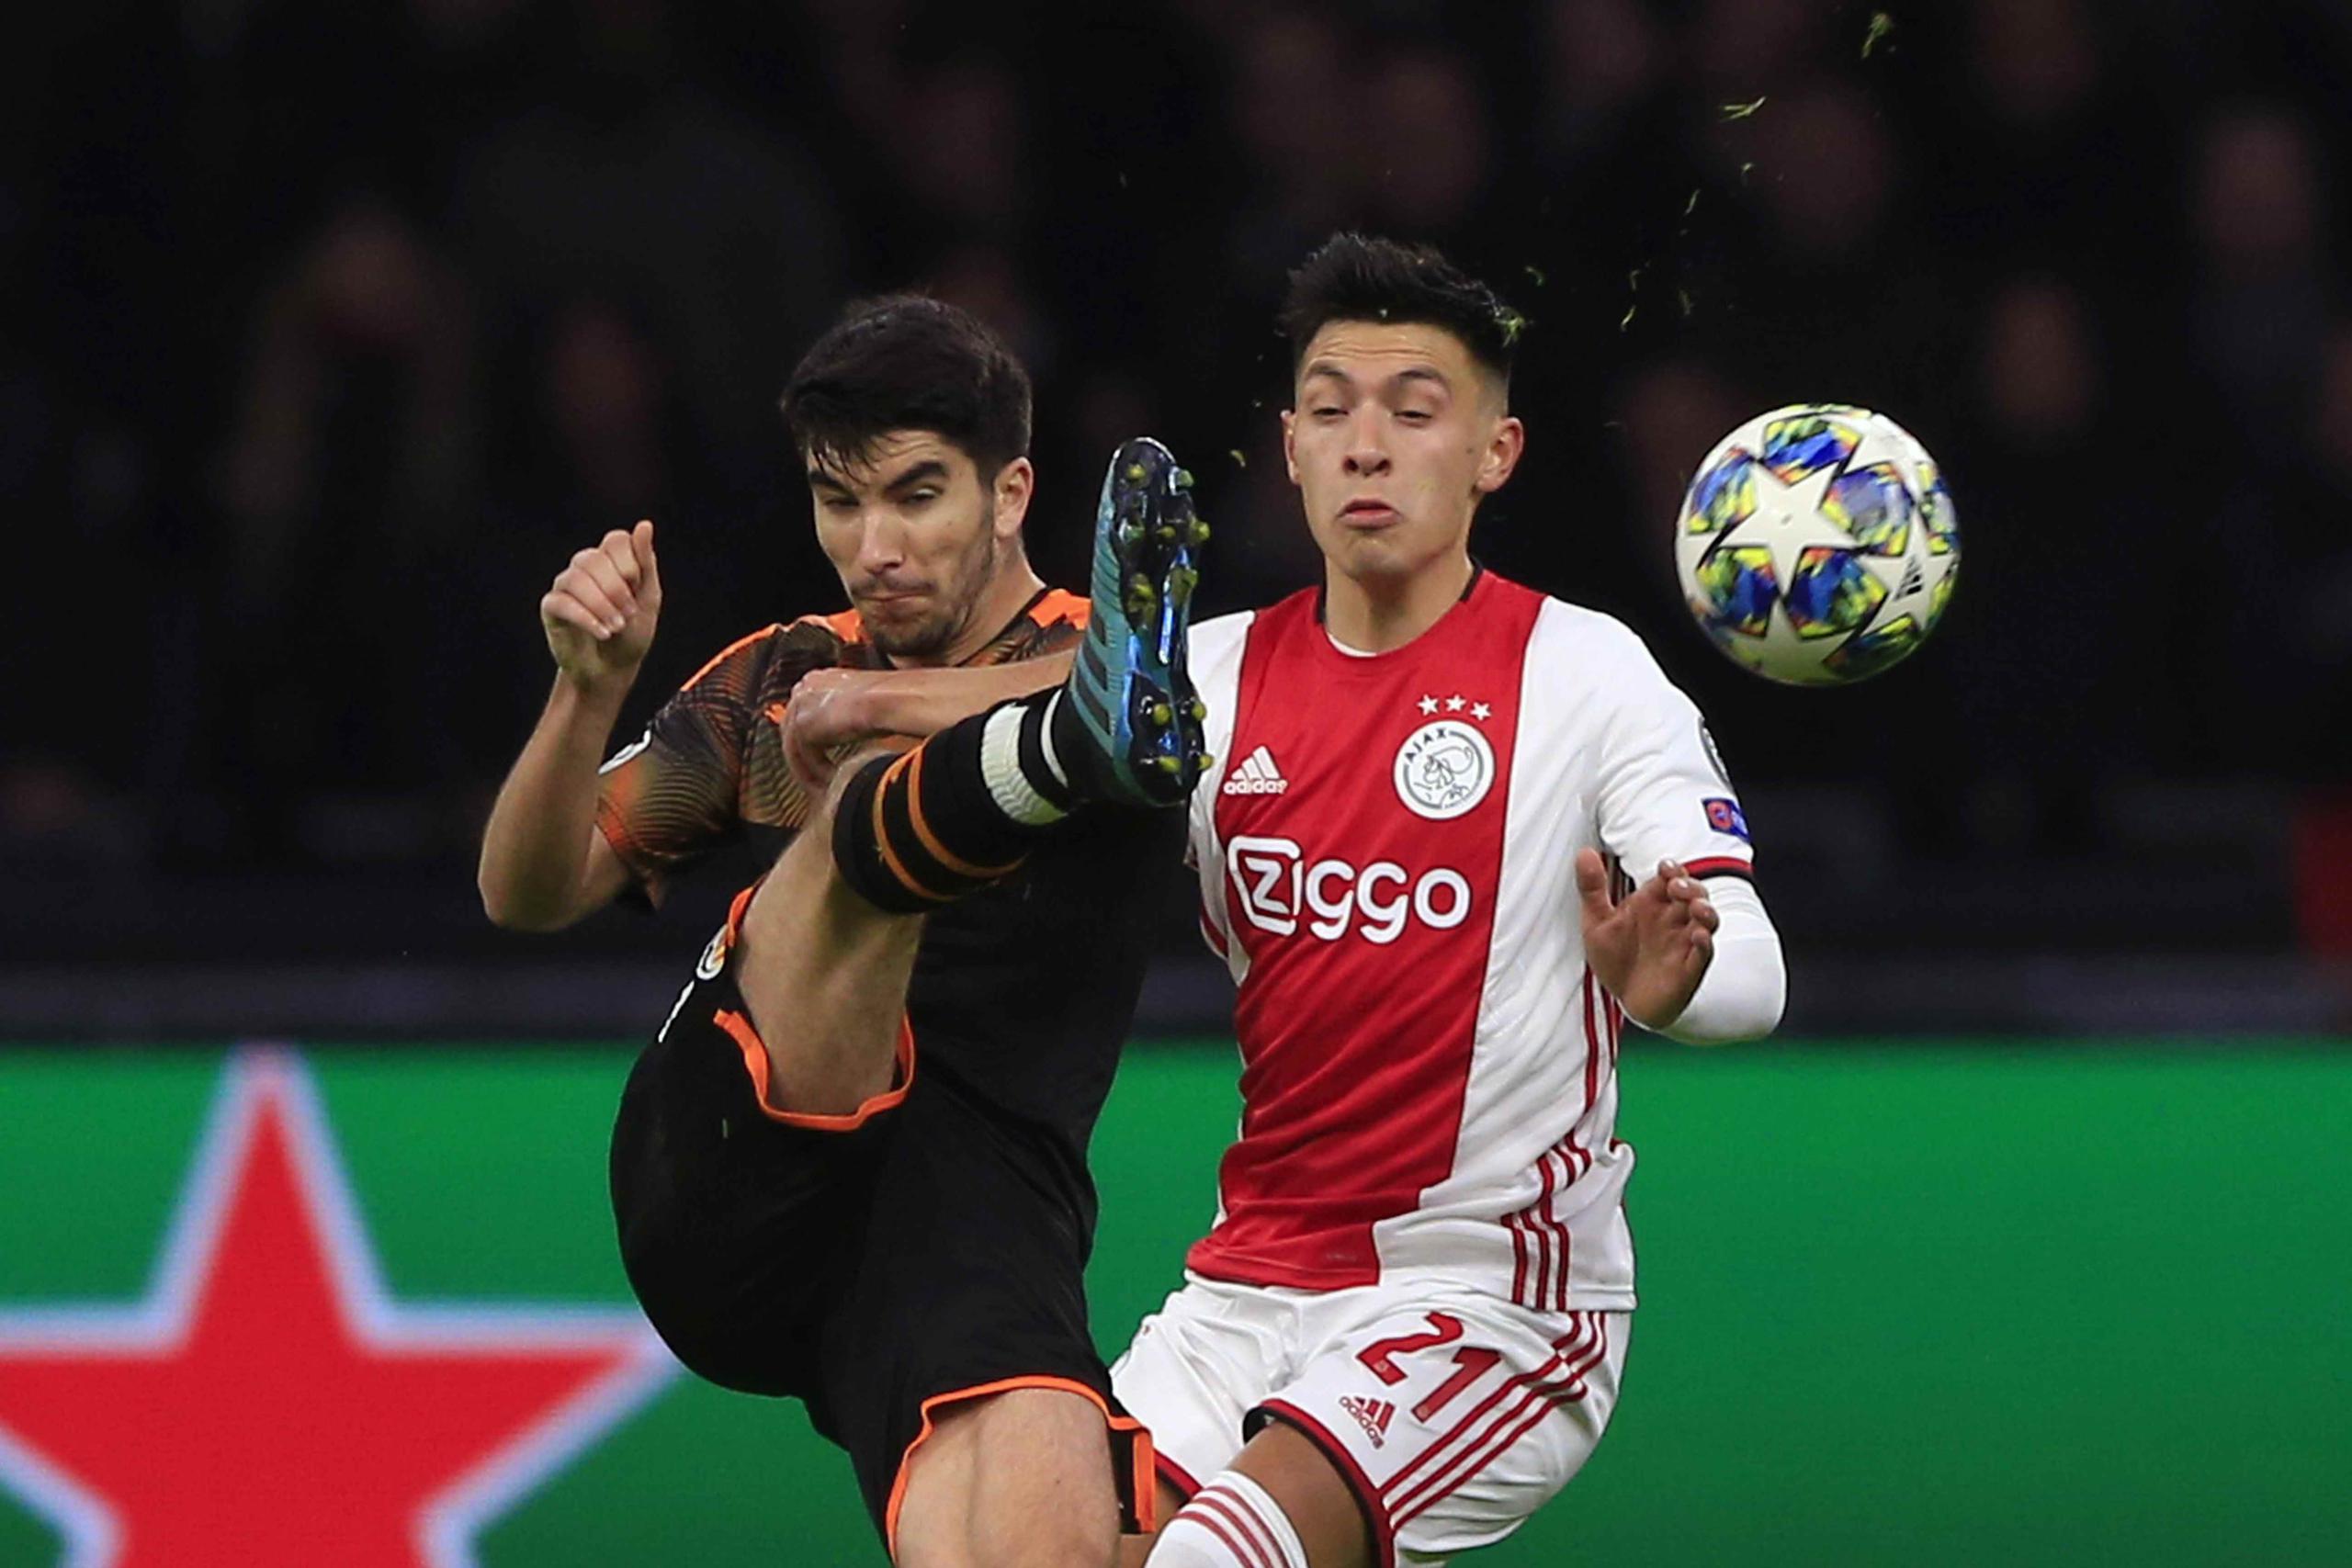 Carlos Soler, del Valencia, a la izquierda, despeja un balón antes de que Lisandro Martínez, del Ajax, pudiese controlarlo. (AP / Peter Dejong)